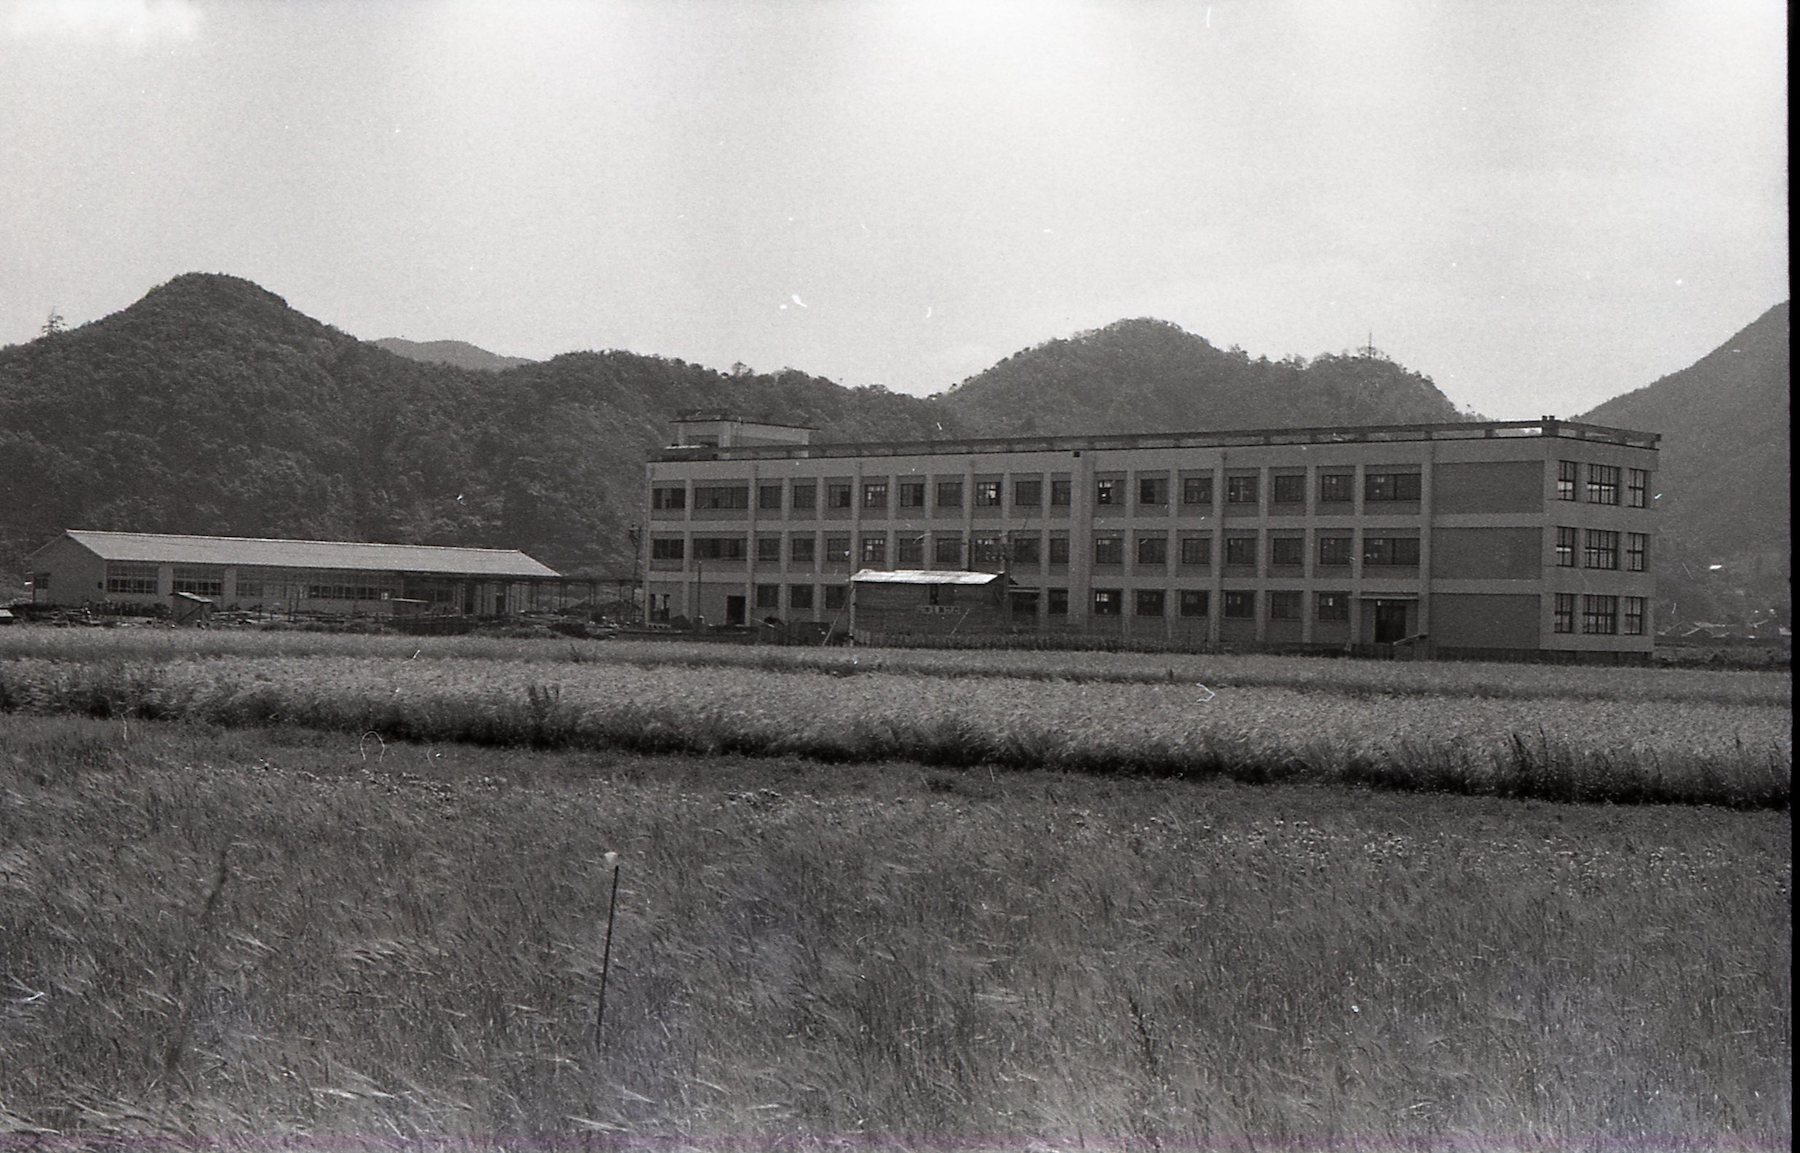 鳥取市立城北小学校's image 2